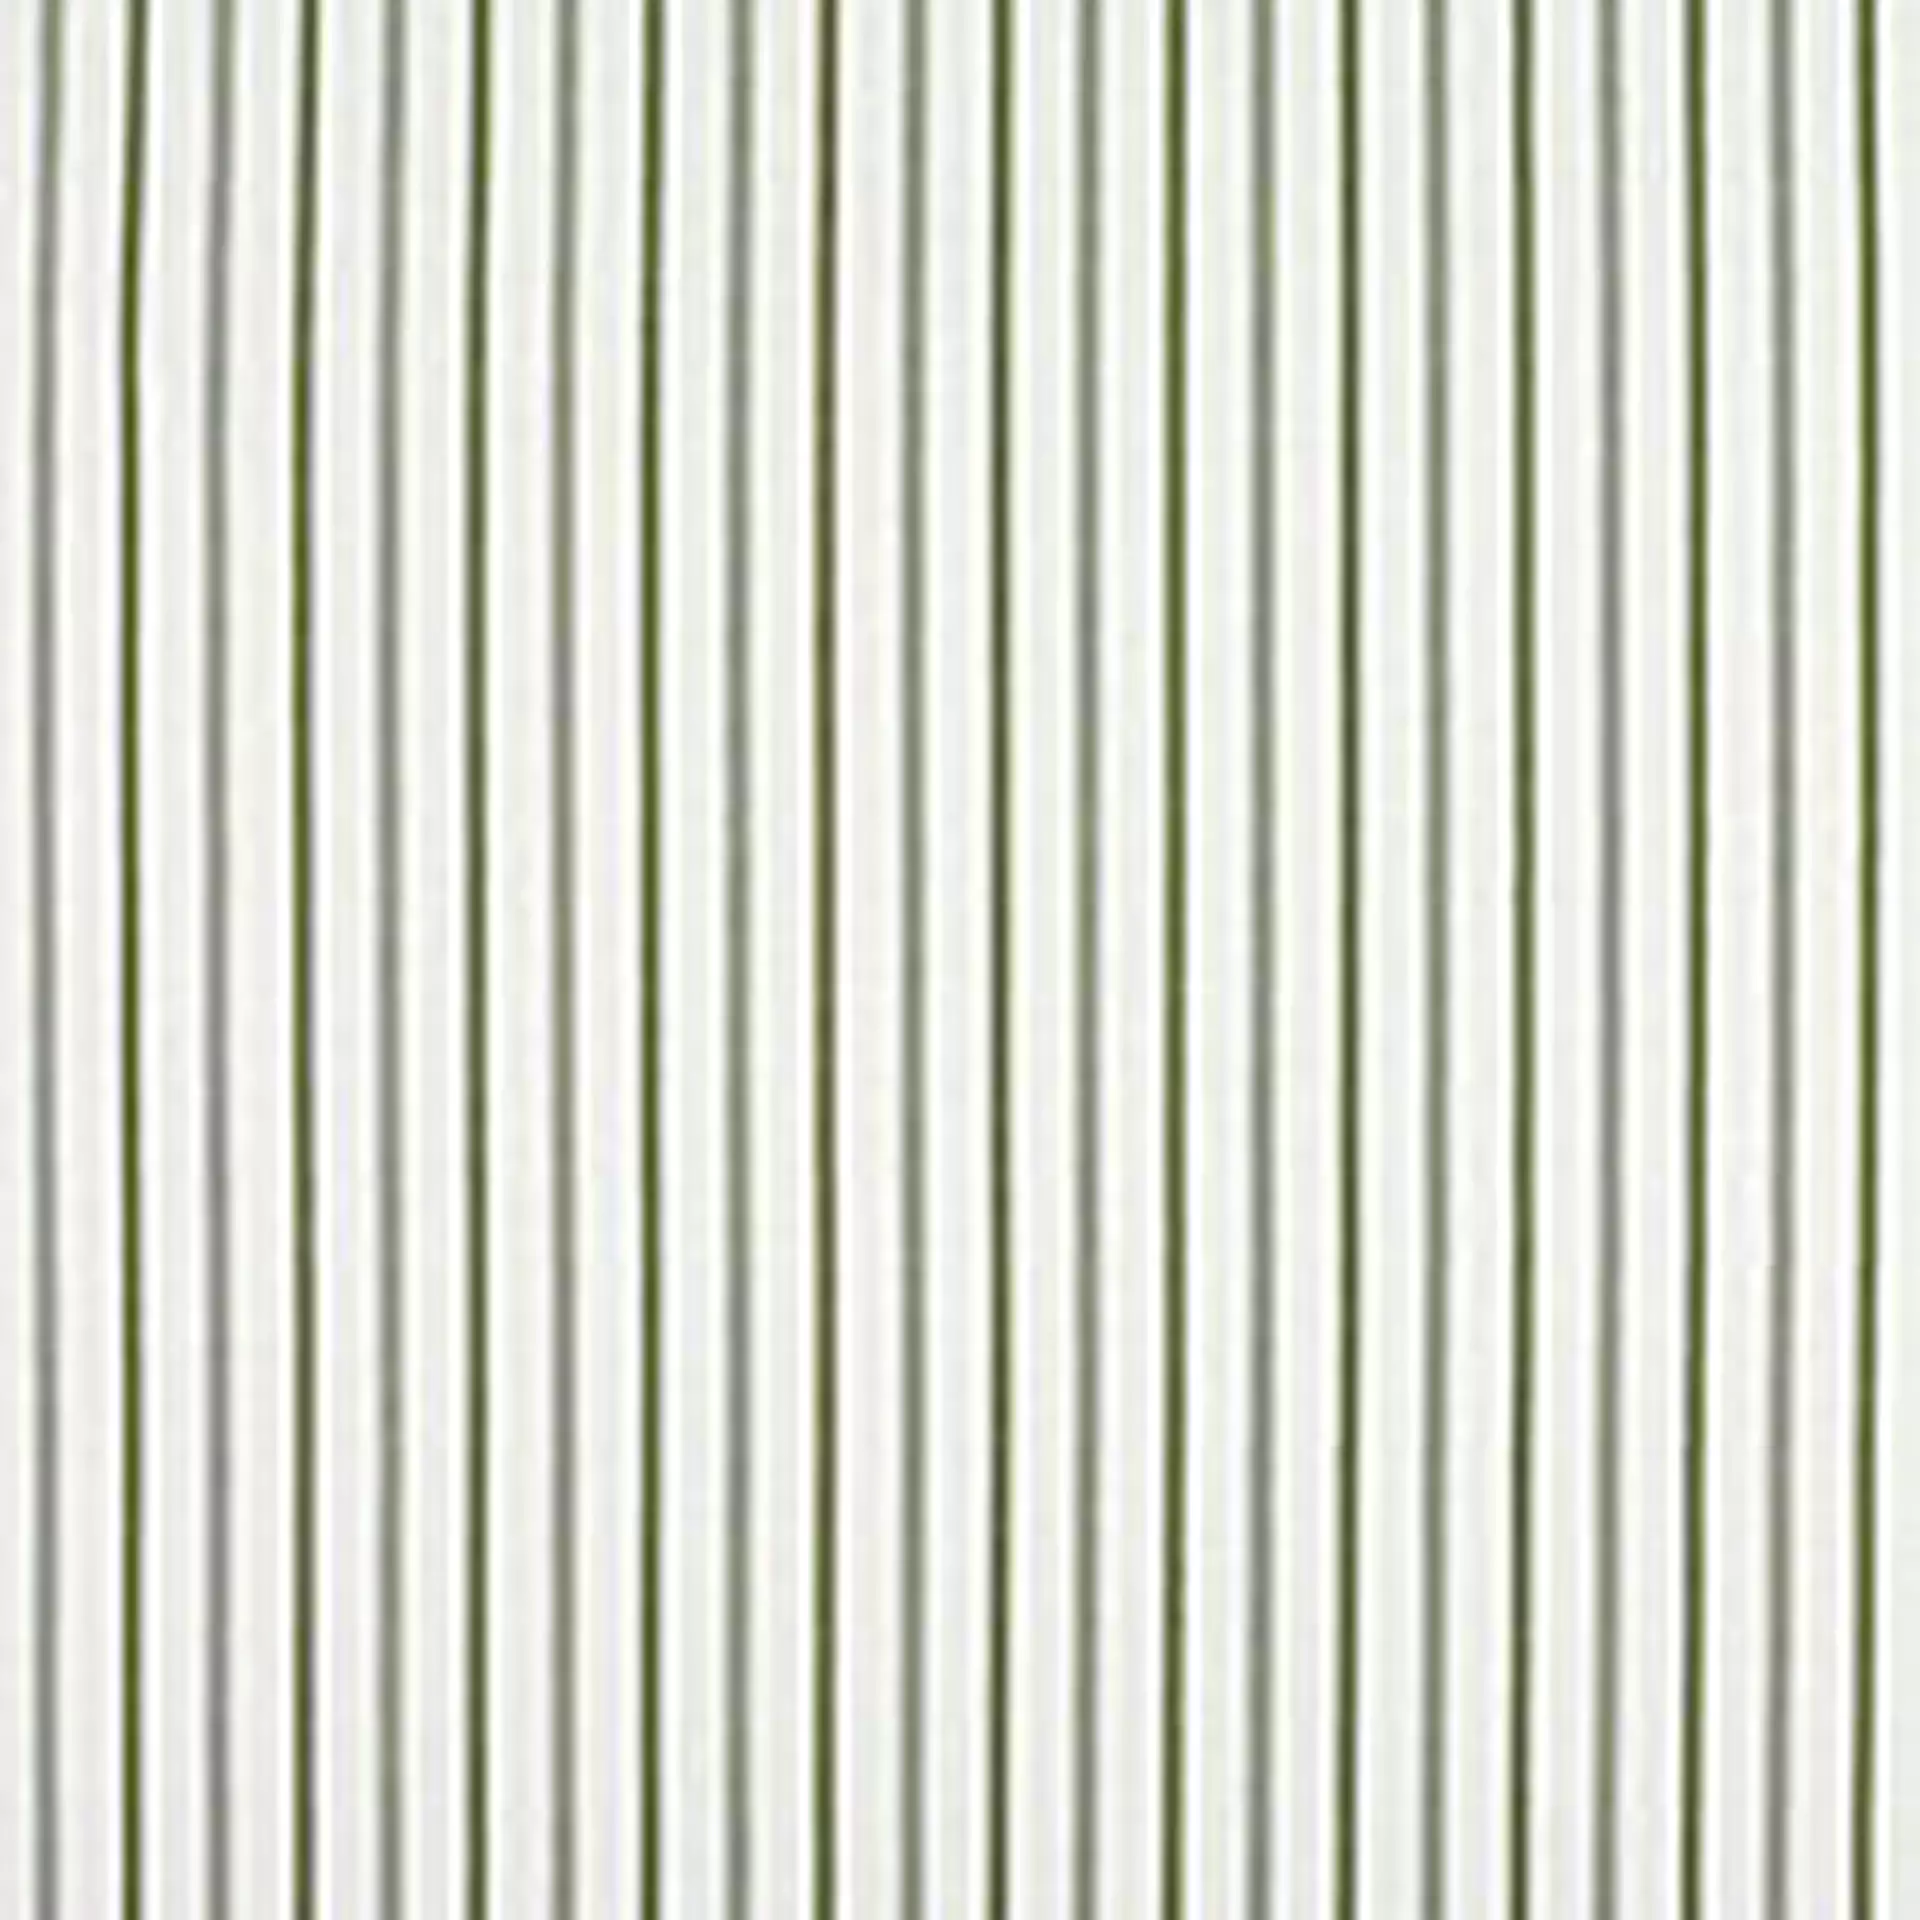 Conley Stripe Fern Fabric By The Yard   - Ballard Designs